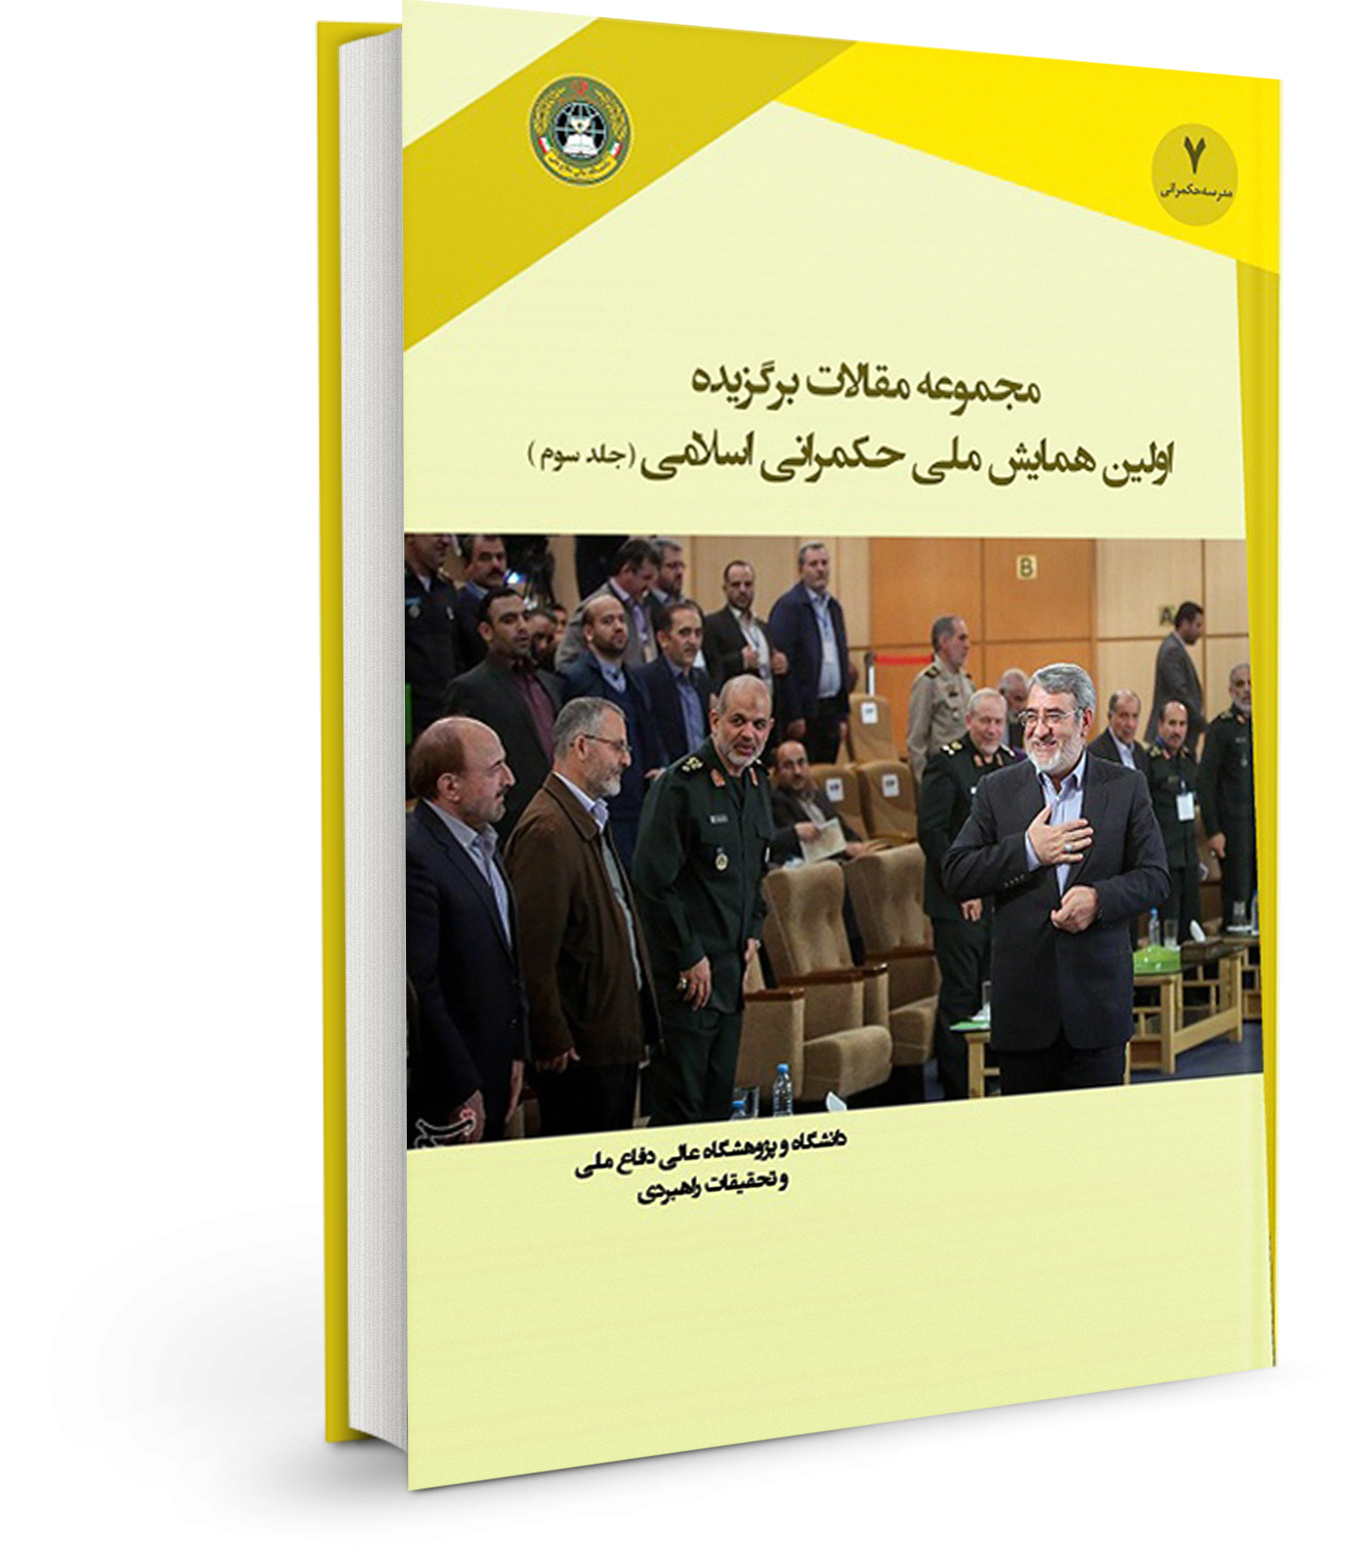 مجموعه مقالات برگزیده اولین همایش ملی حکمرانی اسلامی (جلد سوم)